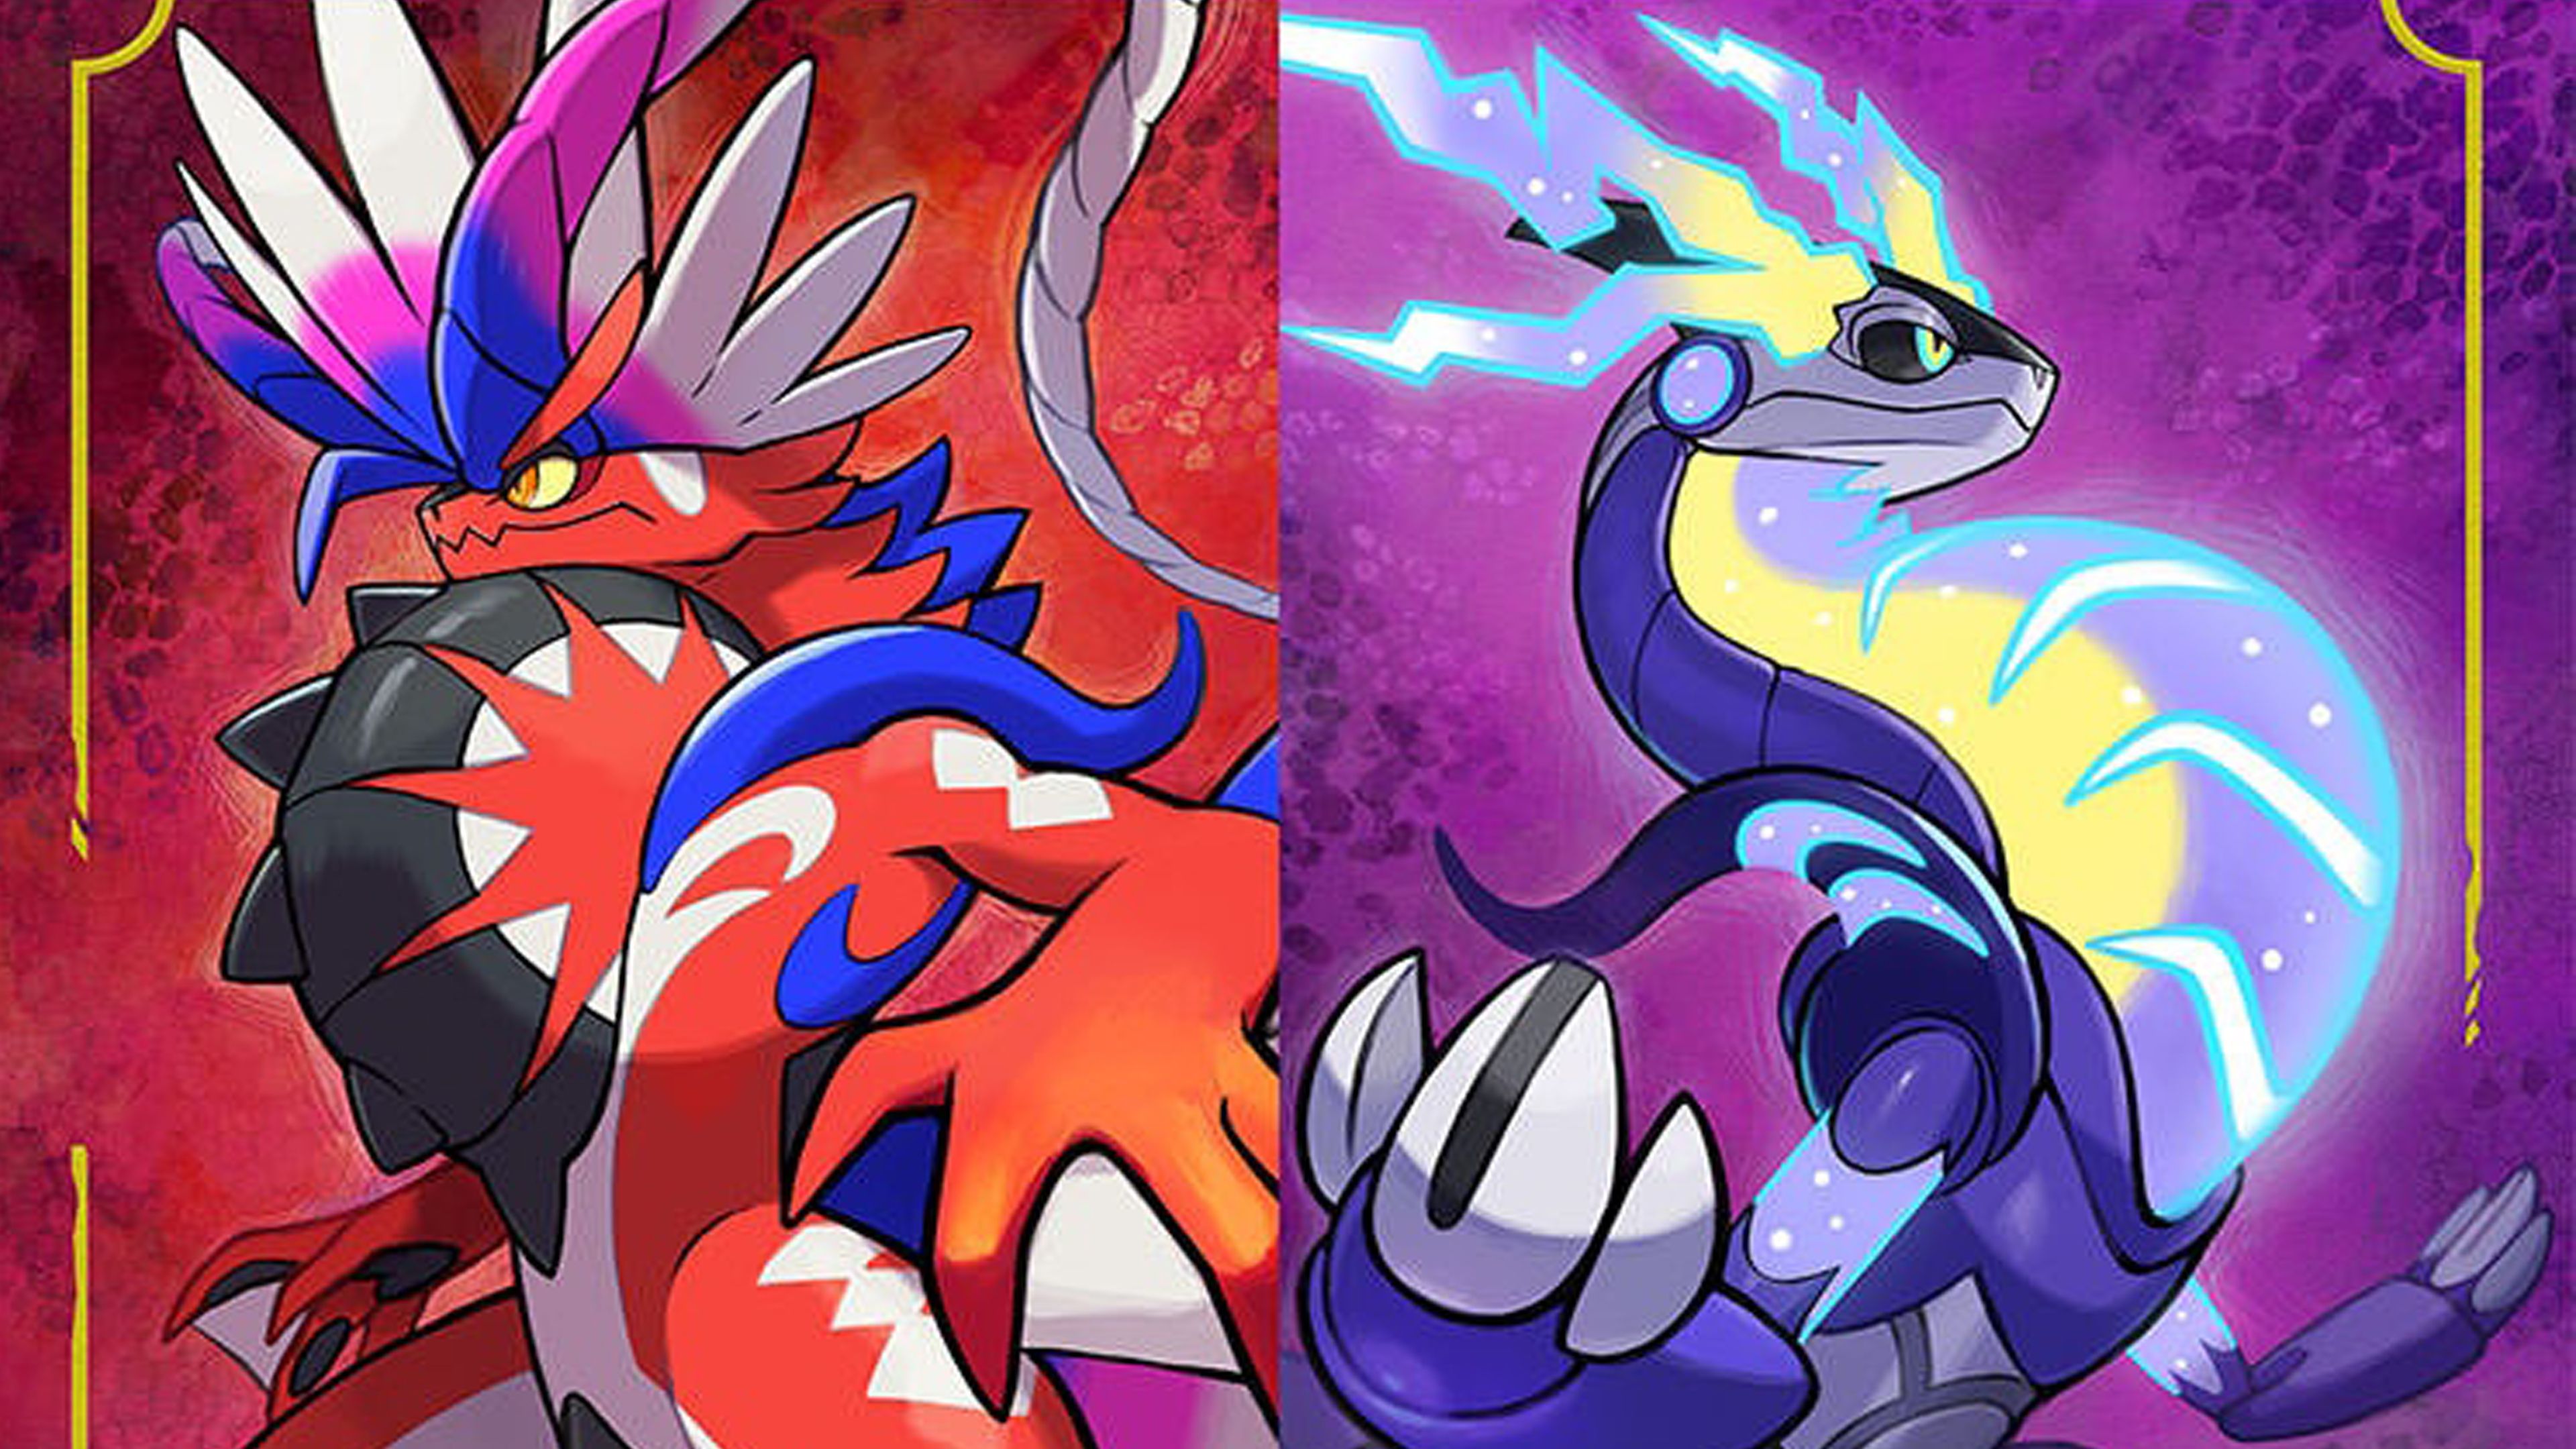 Pokémon Escarlata y Púrpura anuncia el regreso de dos de sus Pokémon más  difíciles de atrapar